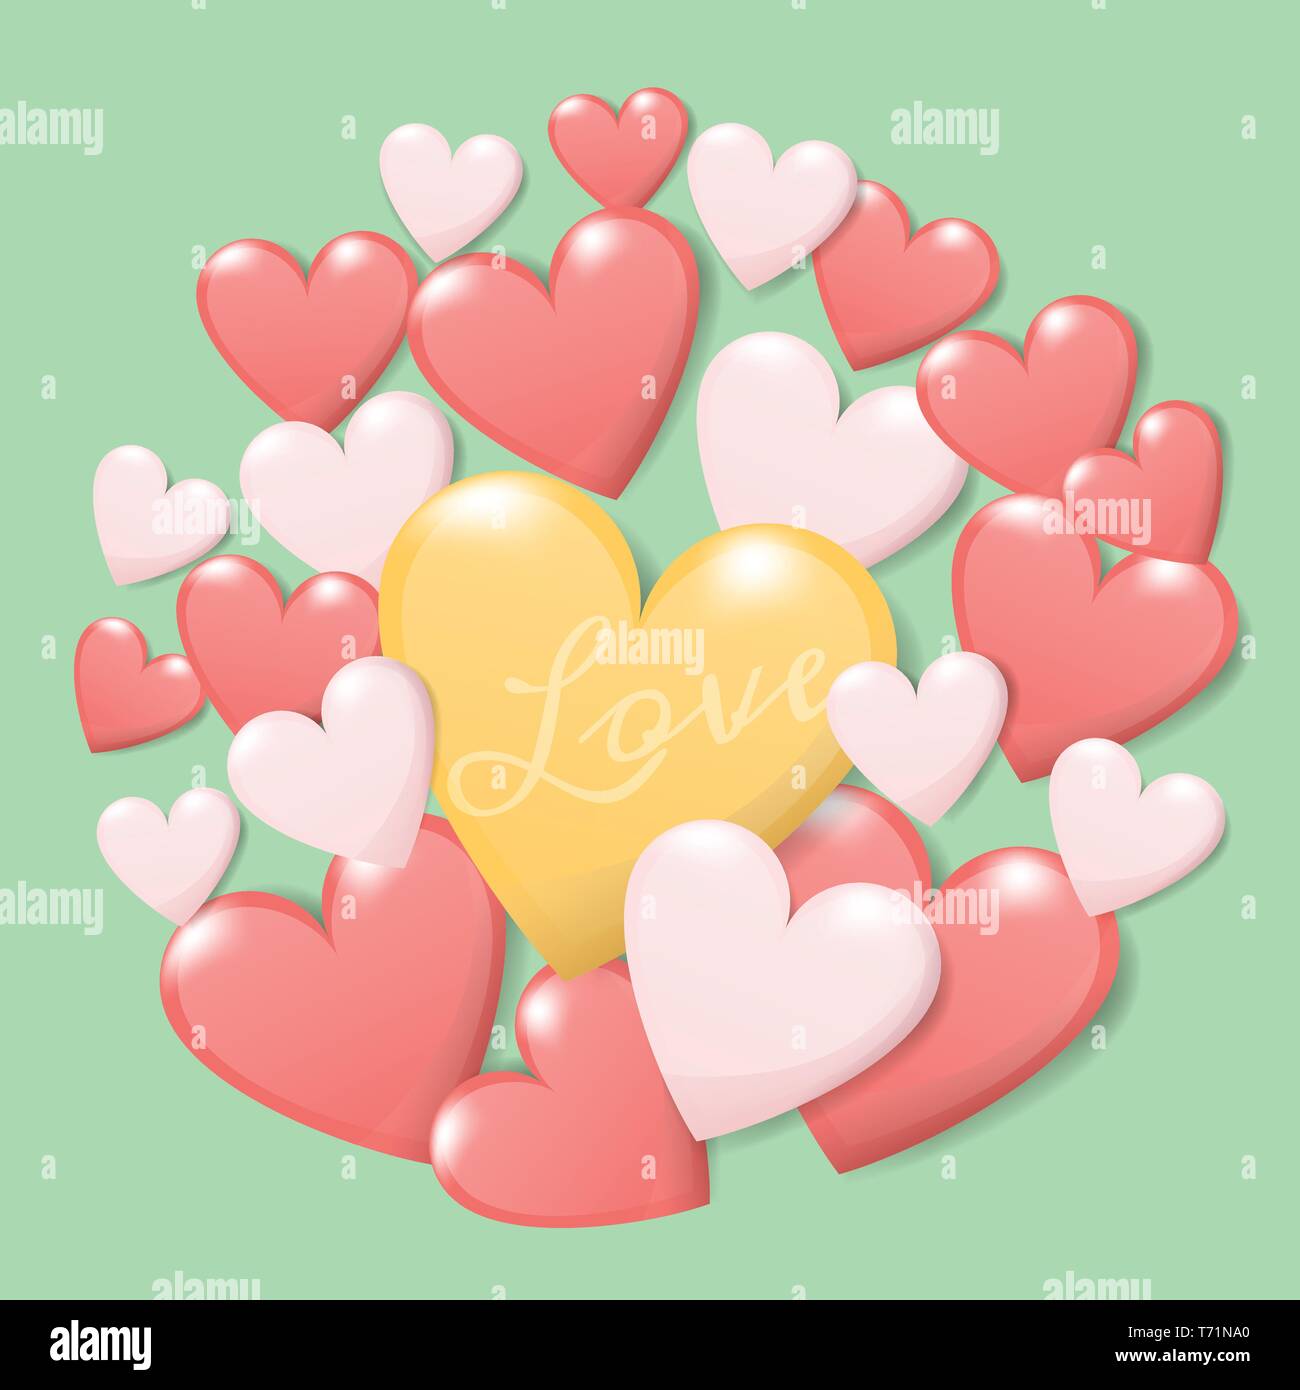 Happy Valentine's day concept. groupe de coeur coloré avec texte love isoler sur fond vert. Vecteur de création conception de cartes de souhaits Illustration de Vecteur